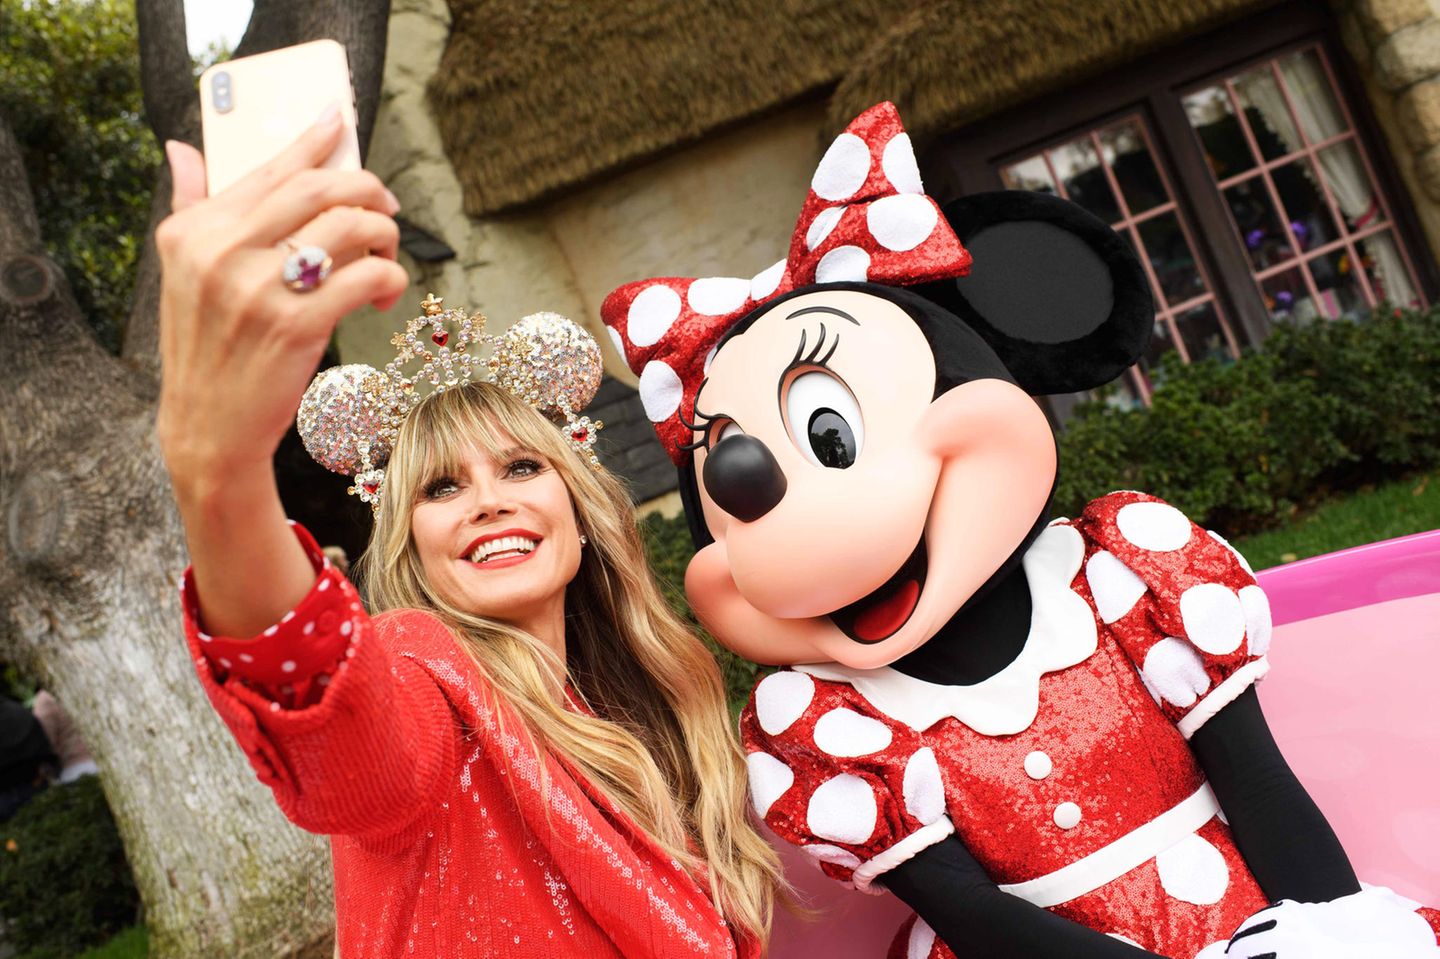 28. September 2019  Heidi Klum posiert im Partnerlook mit ihrem Fashion-Vorbild Minnie Mouse im kalifornischen Disneyland. Anlass für das Treffen der beiden stylischen Mäuse ist die Präsentation der von Heidi designten und mit Swarovski-Kristallen bestückten Minnie-Maus-Ohren für die "Disney Parks Designer Collection".